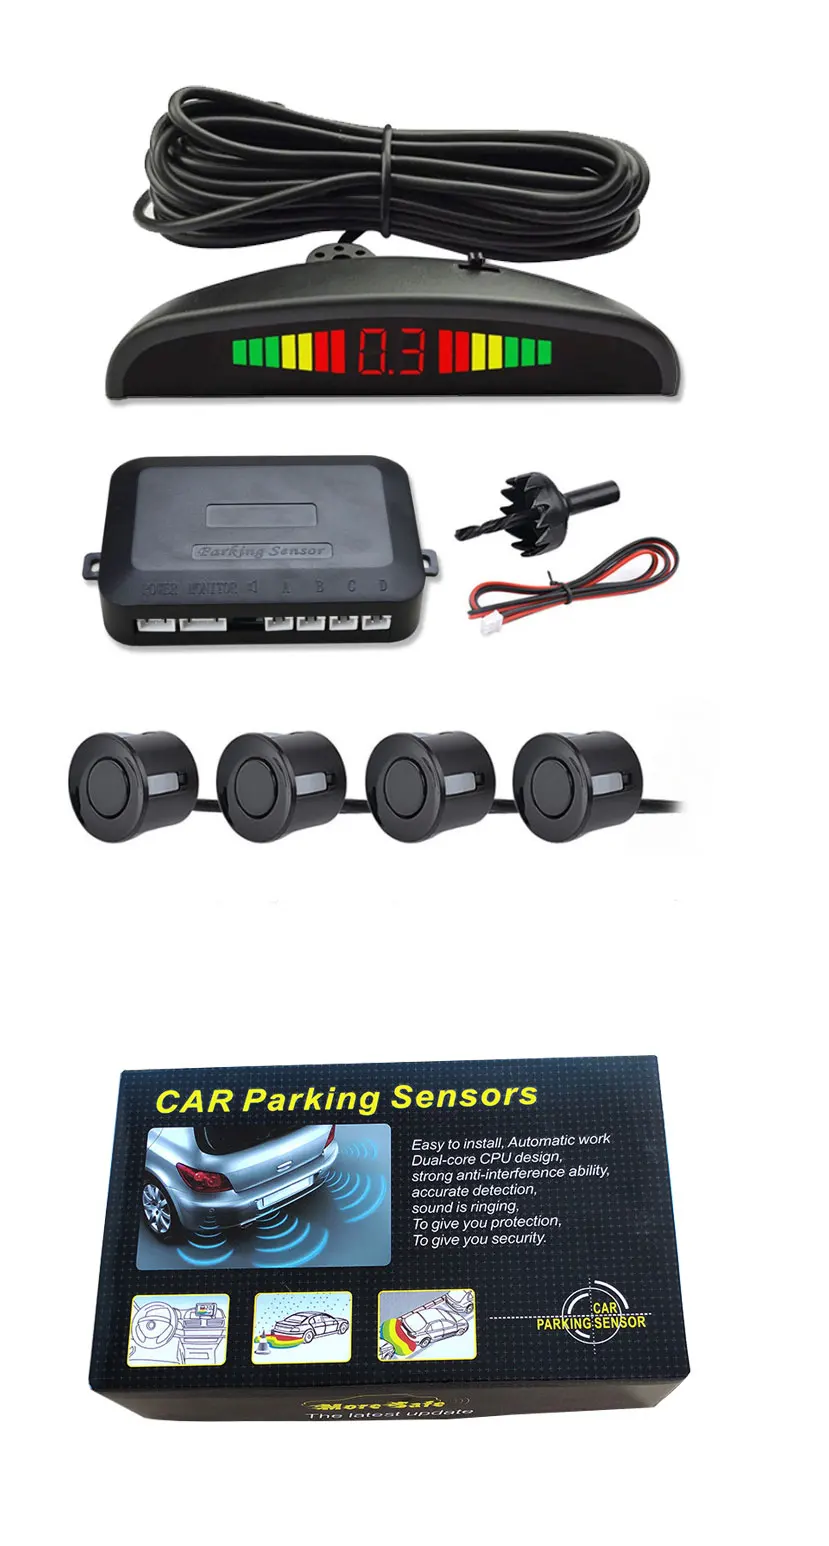 4 Parking Sensors Car Reverse Backup Radar System LED Display Sound Alert Alarm 